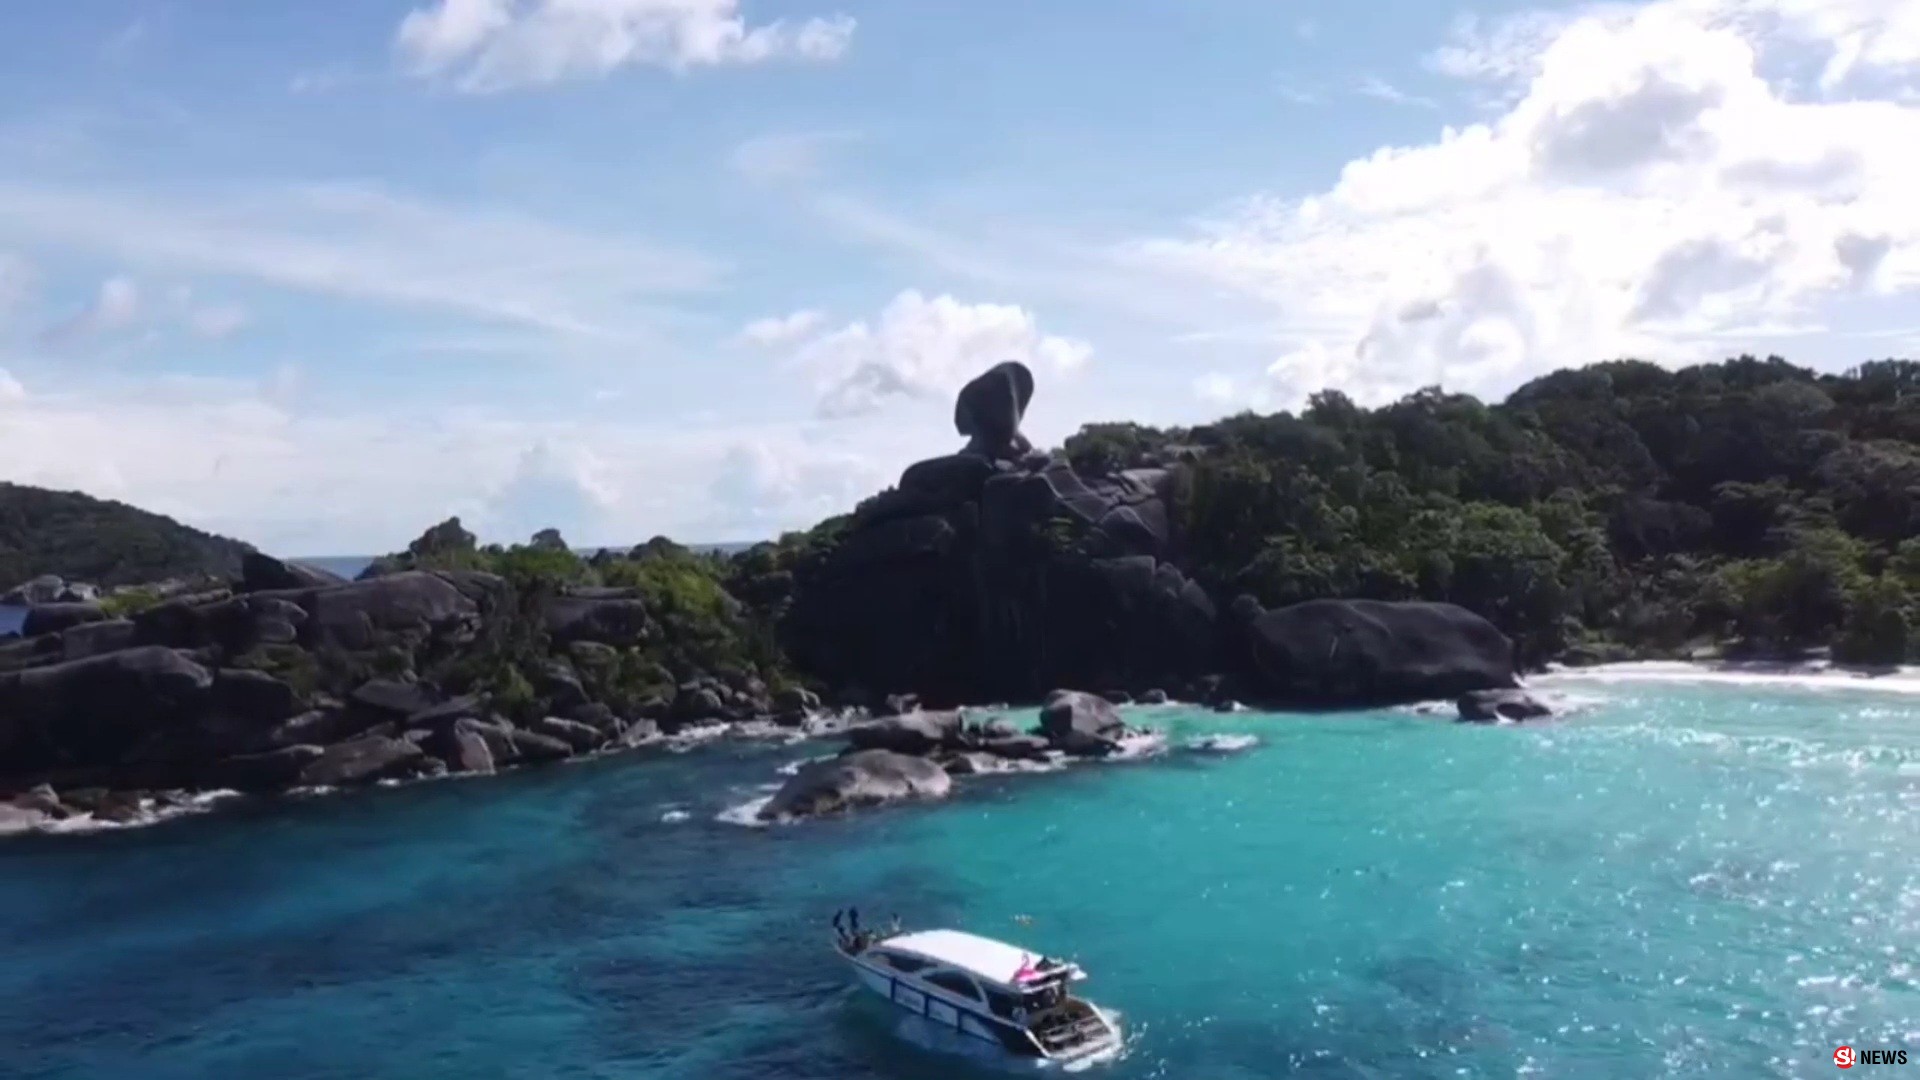 นักท่องเที่ยวนับพันแห่ลงเกาะสิมิลันหยุดยาว ขณะโรงแรมที่พักพร้อมรับนักท่องเที่ยว